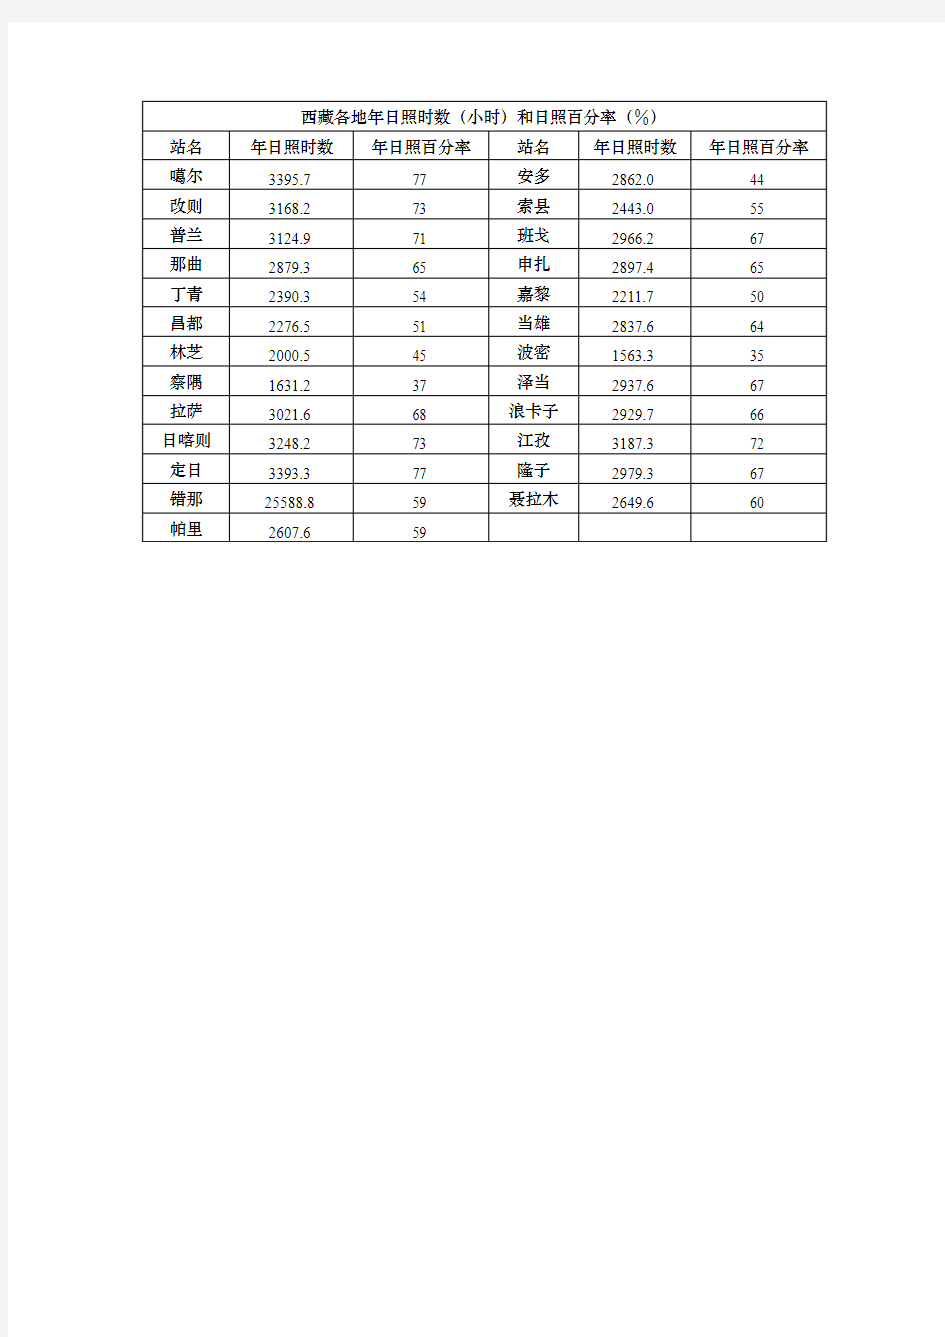 西藏各地年日照时数(小时)和日照百分率(%)